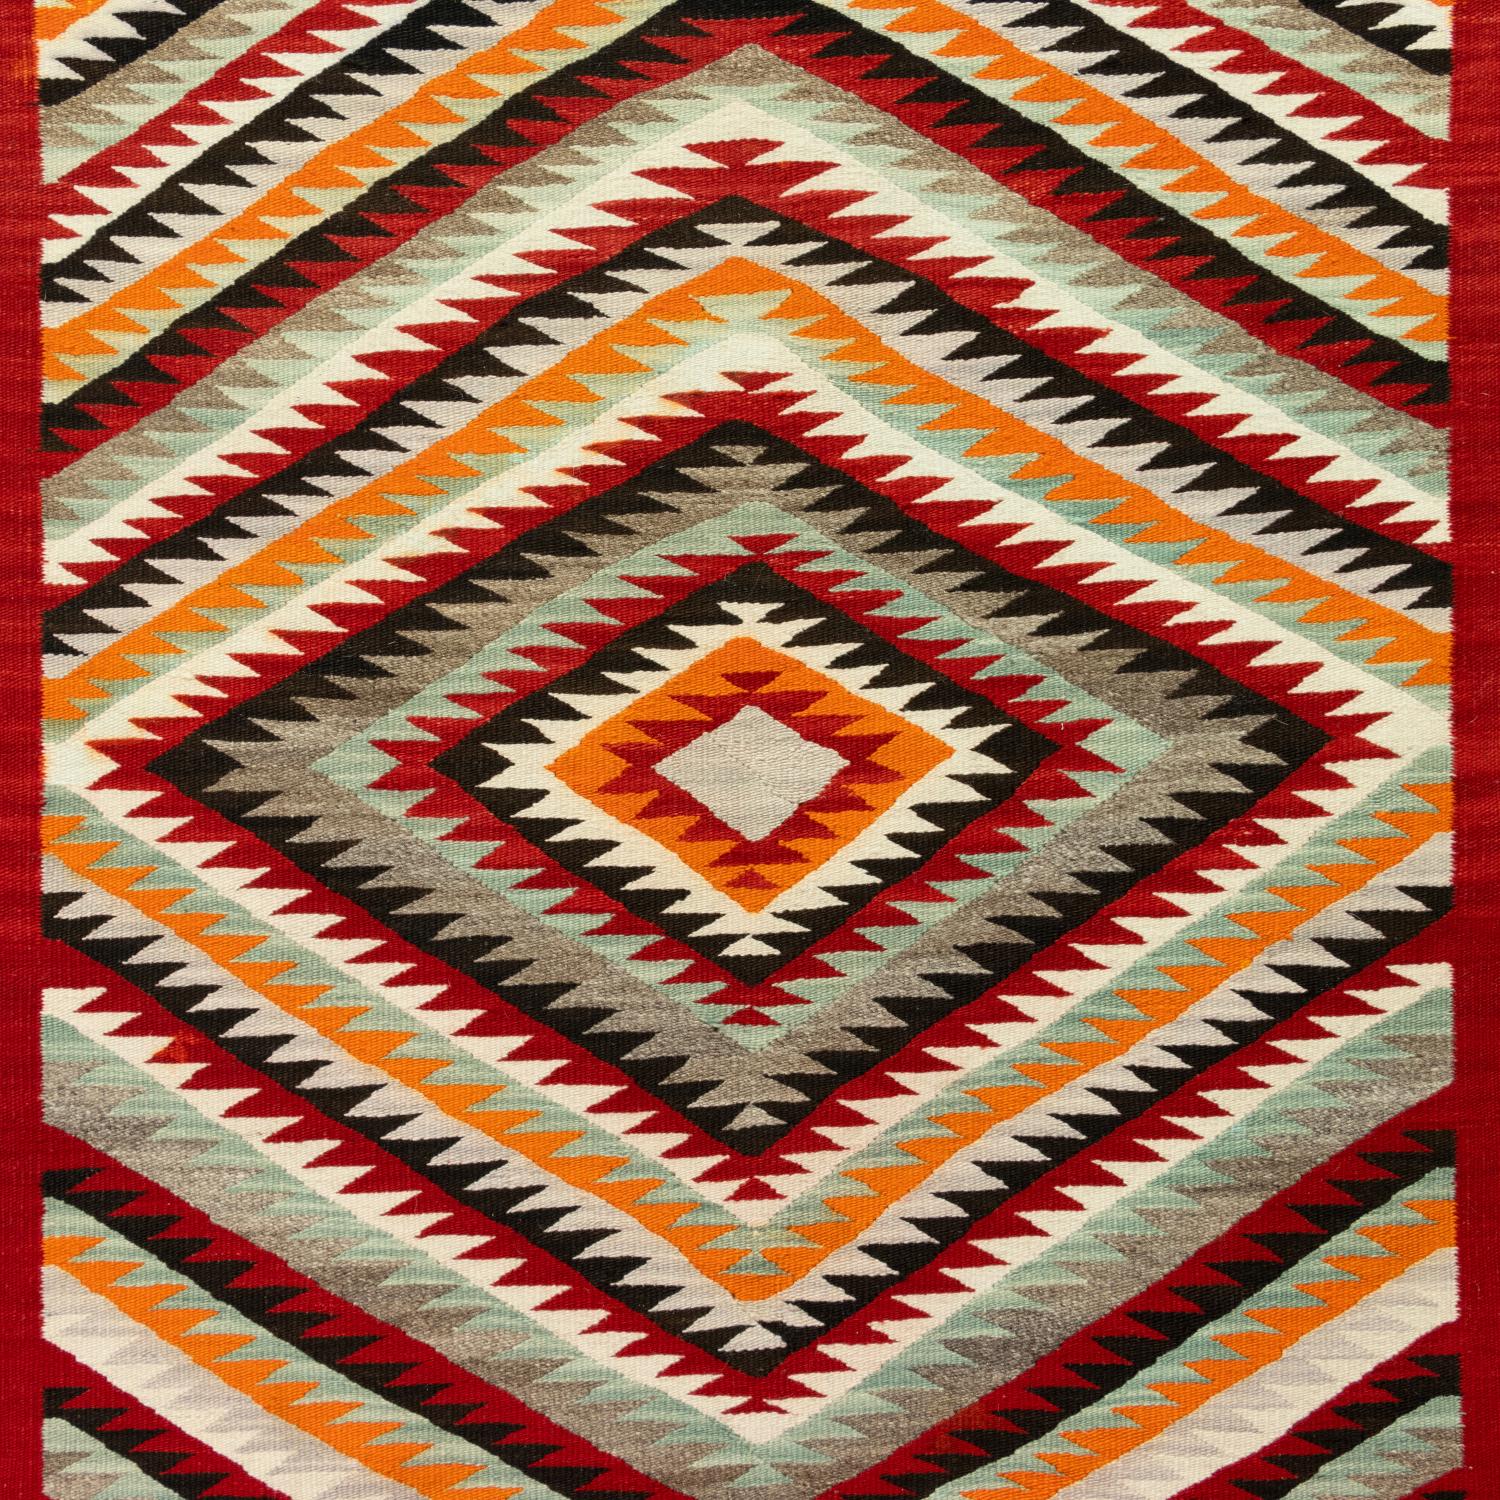 American Navajo Red Mesa Saddle Blanket/Floor Weaving For Sale